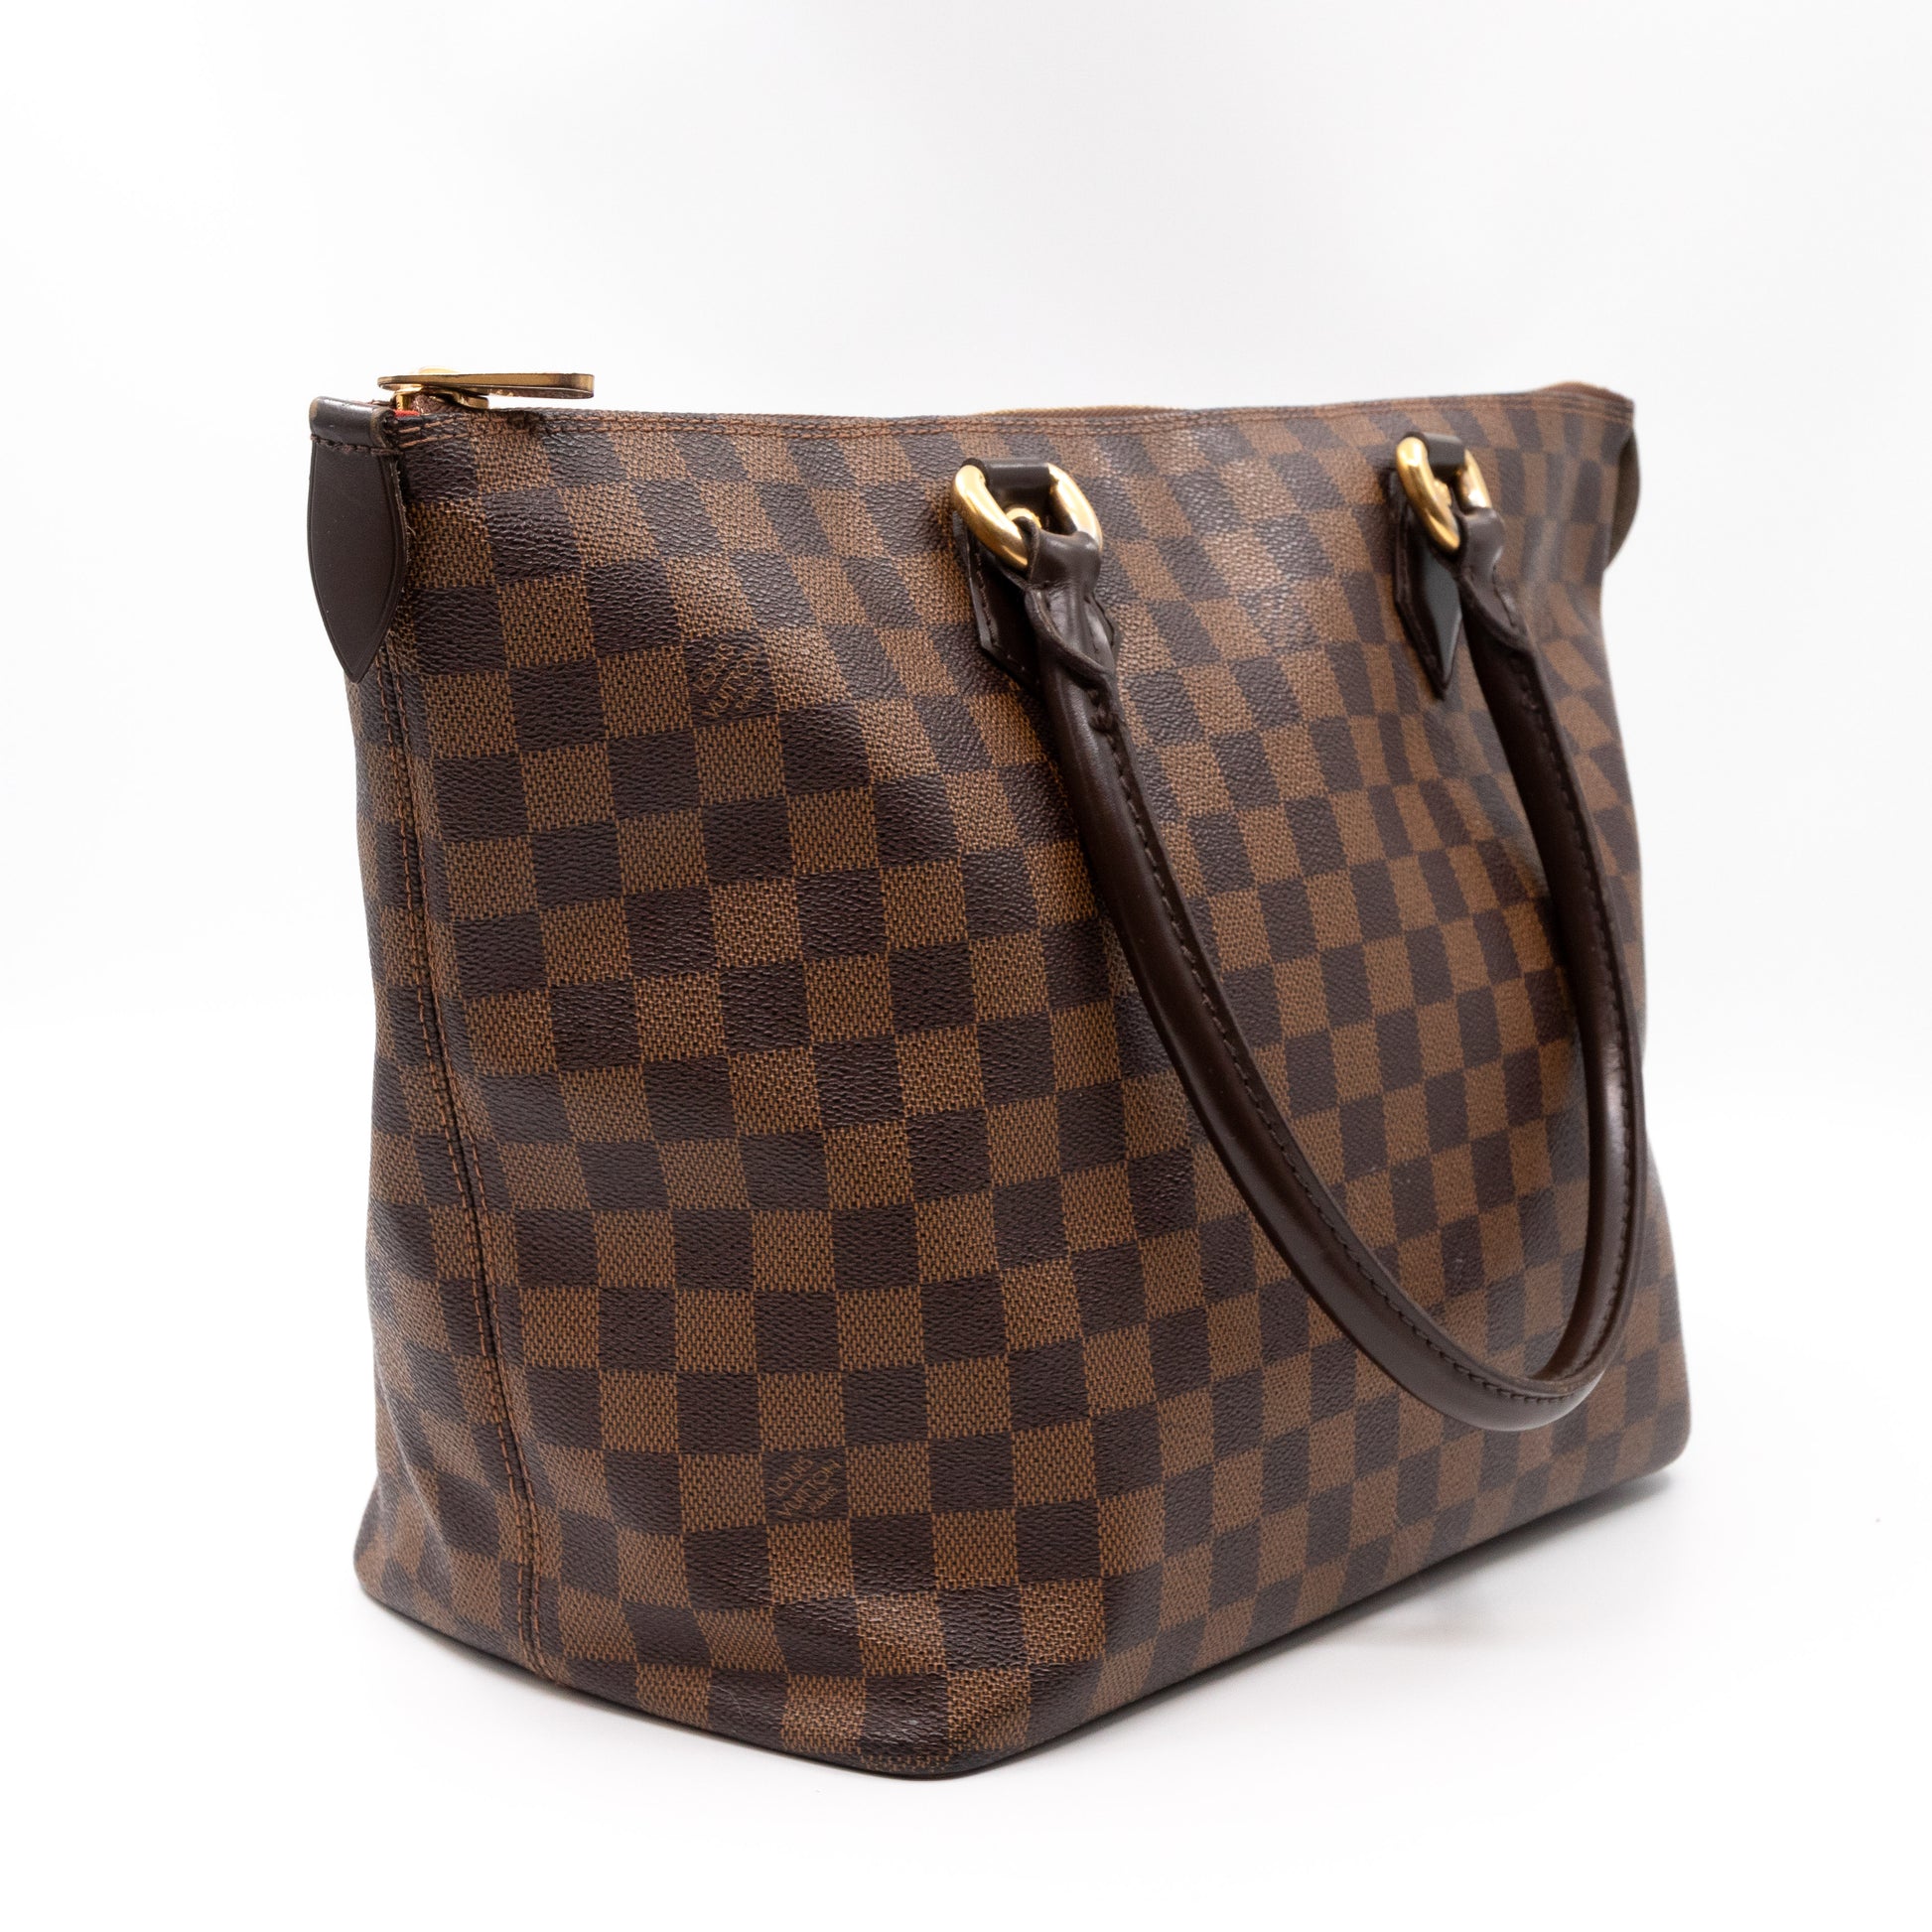 Louis Vuitton Damier Azur Saleya PM Zip Tote Bag 860L12